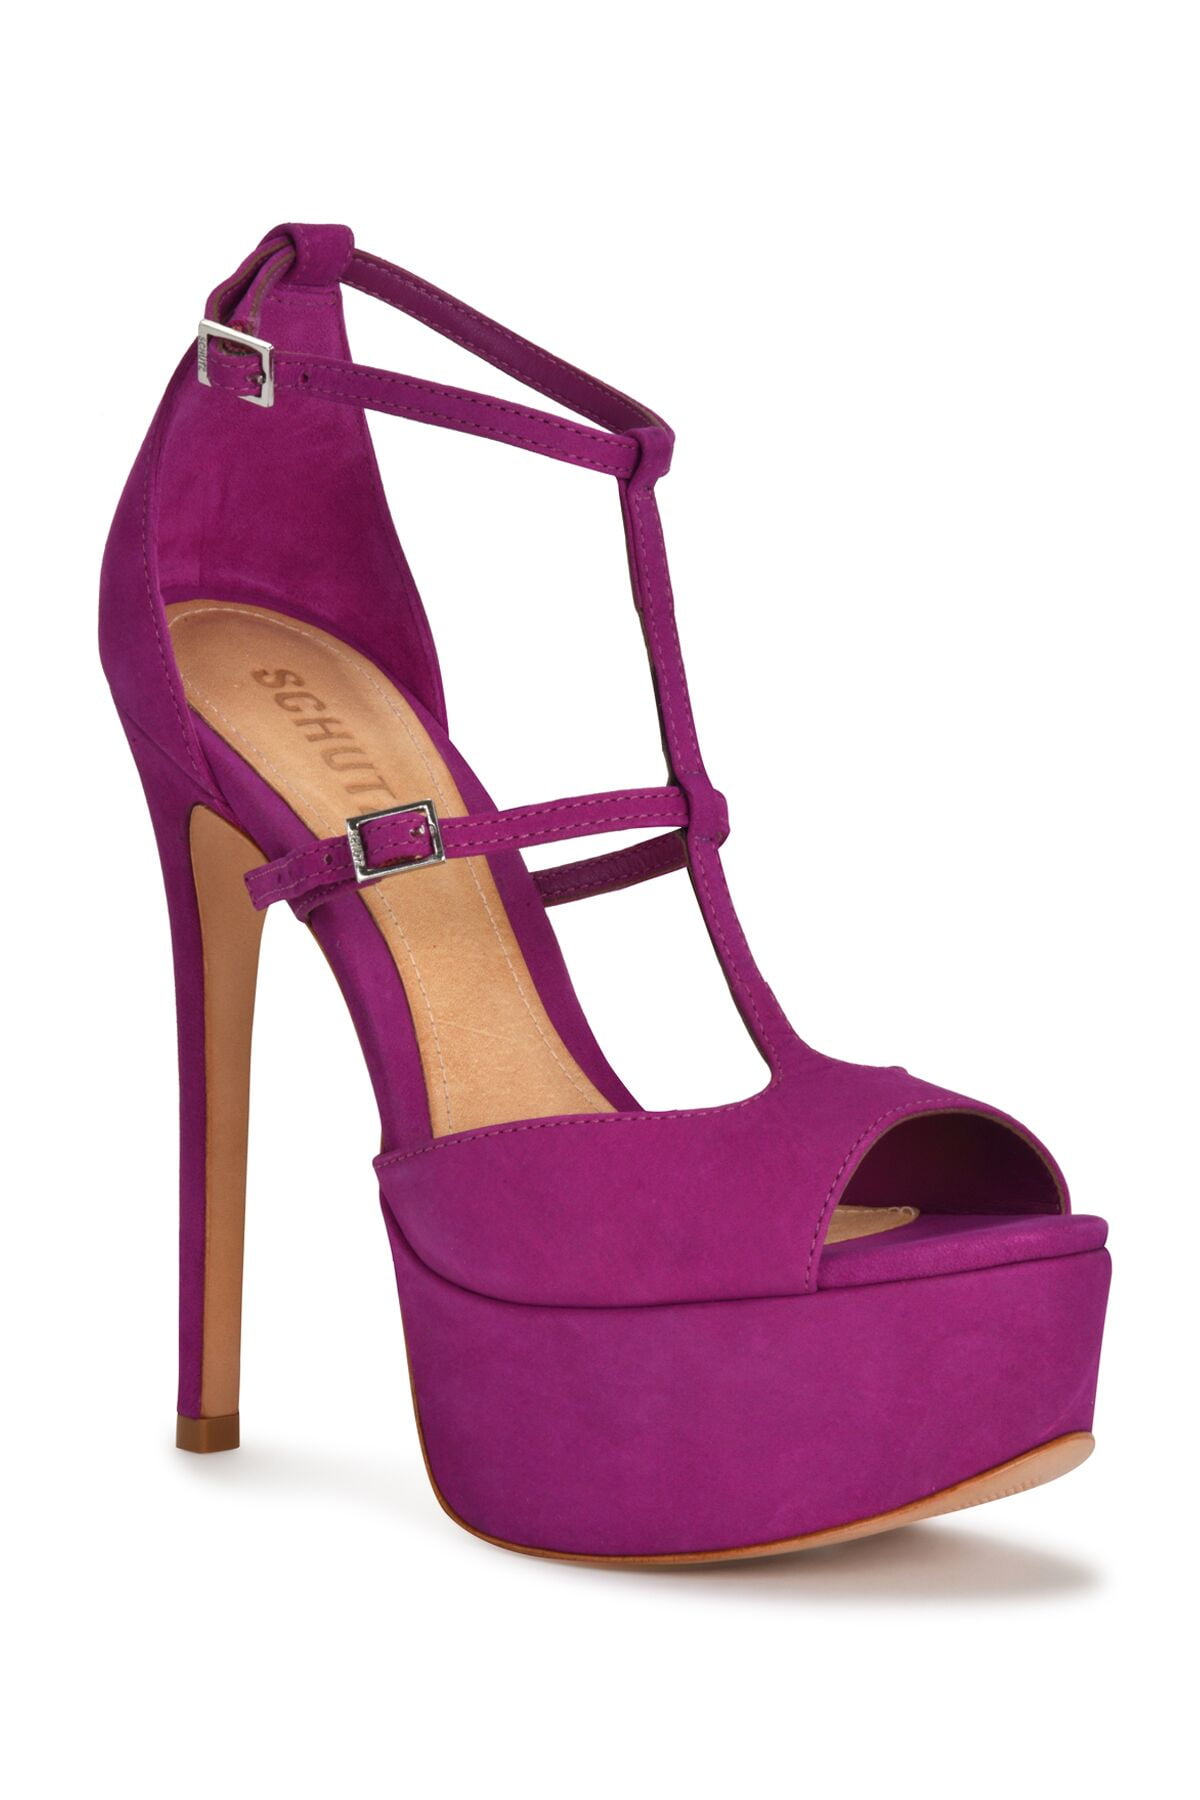 Schutz Shoes - Schutz Parina Lolita Purple Suede Strappy Buckle ...